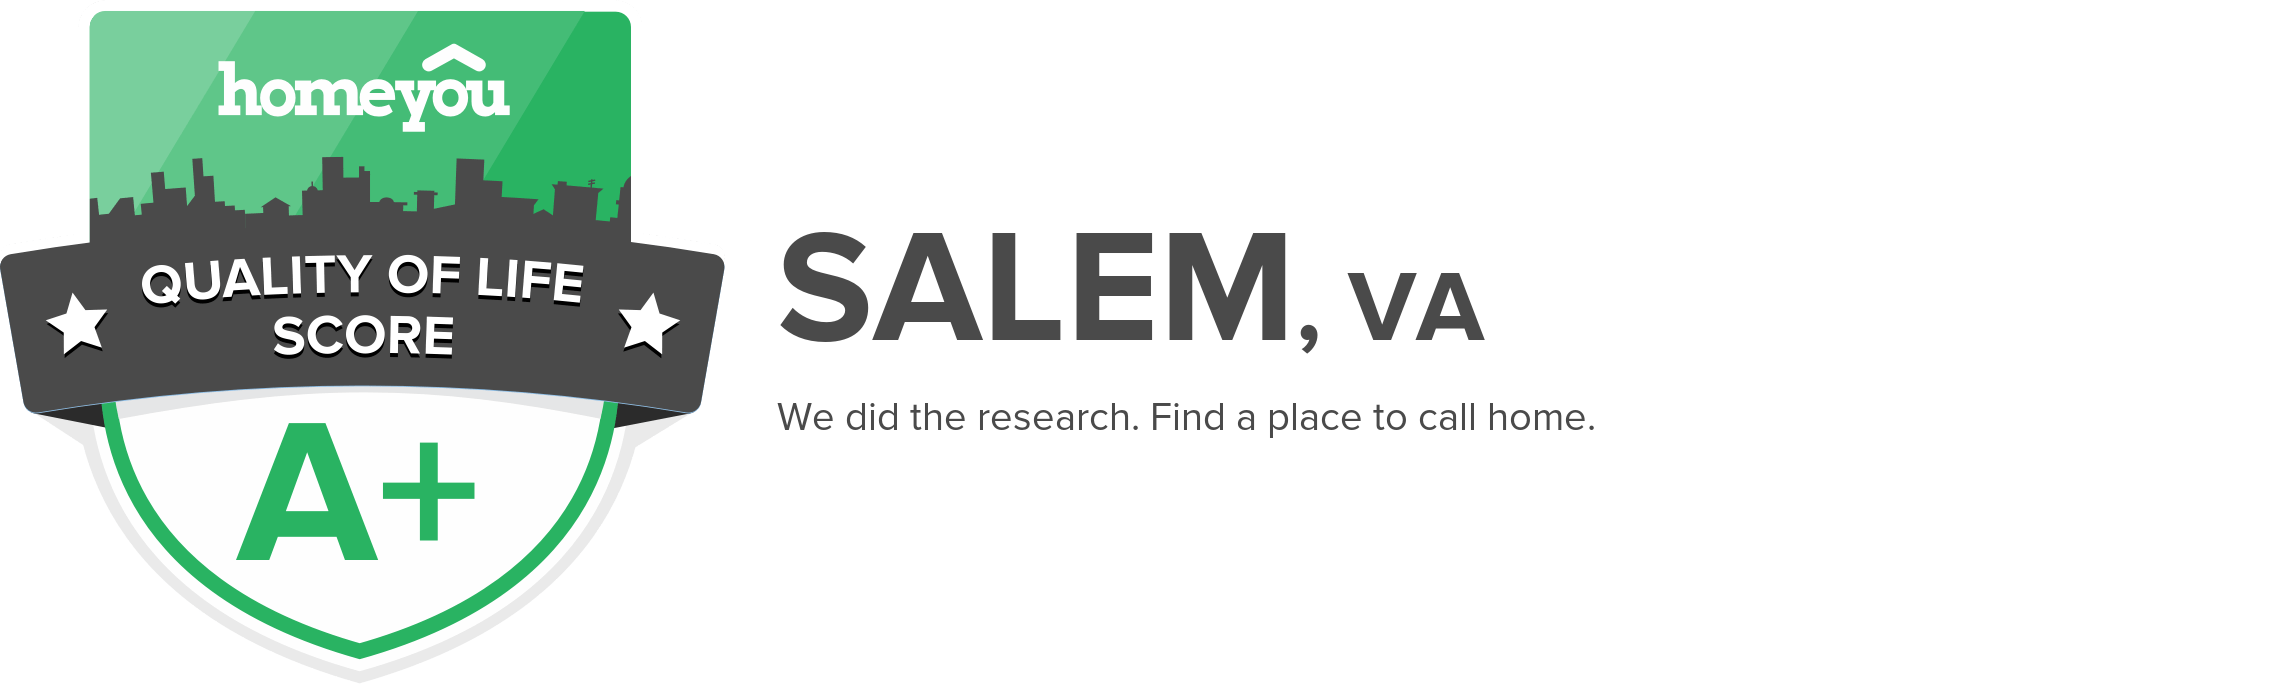 Salem, VA